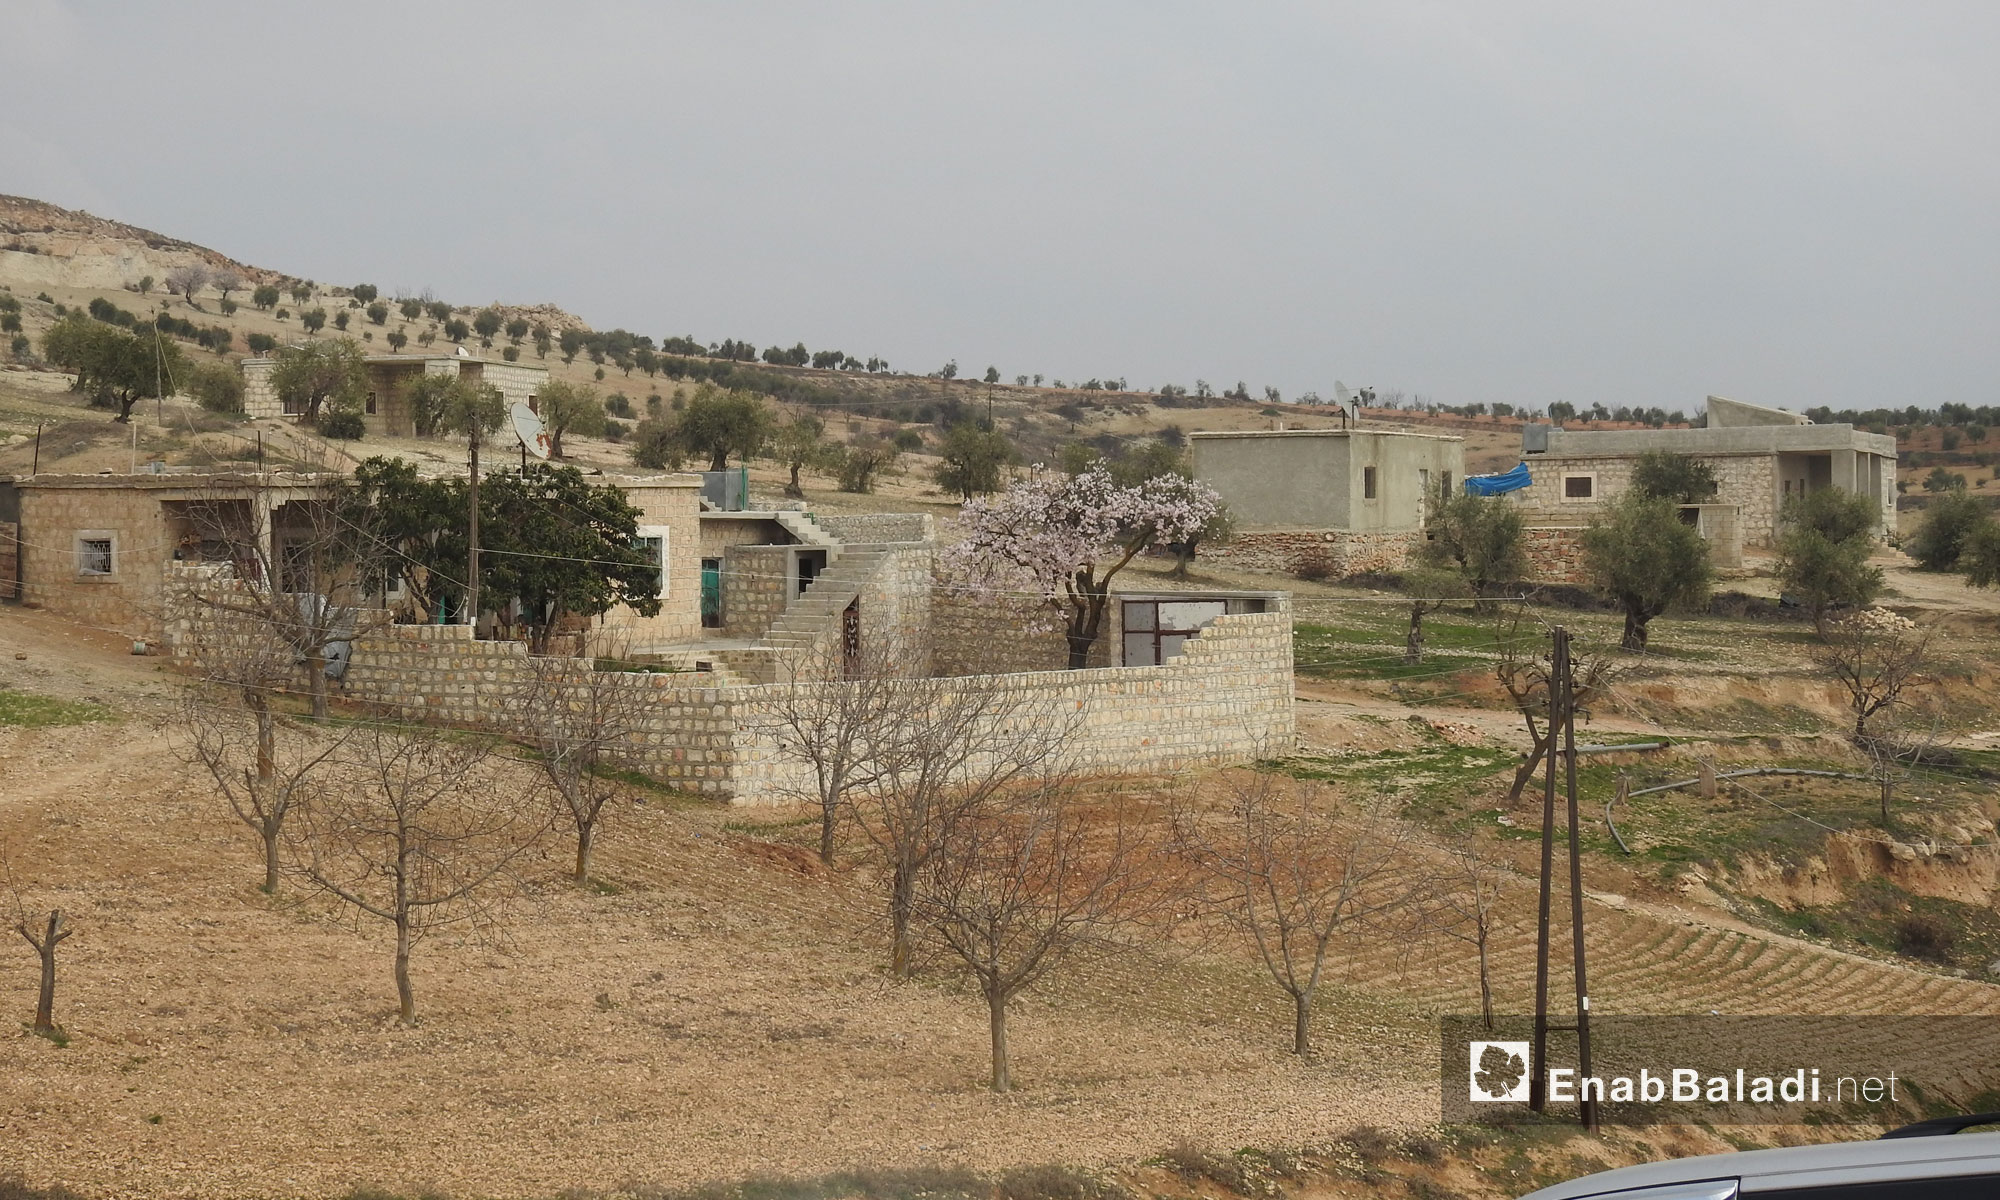 قرية ديكماطاش بعد سيطرة الجيش الحر عليها ضمن عملية "غصن الزيتون" في عفرين - 21 شباط 2018 (عنب بلدي)